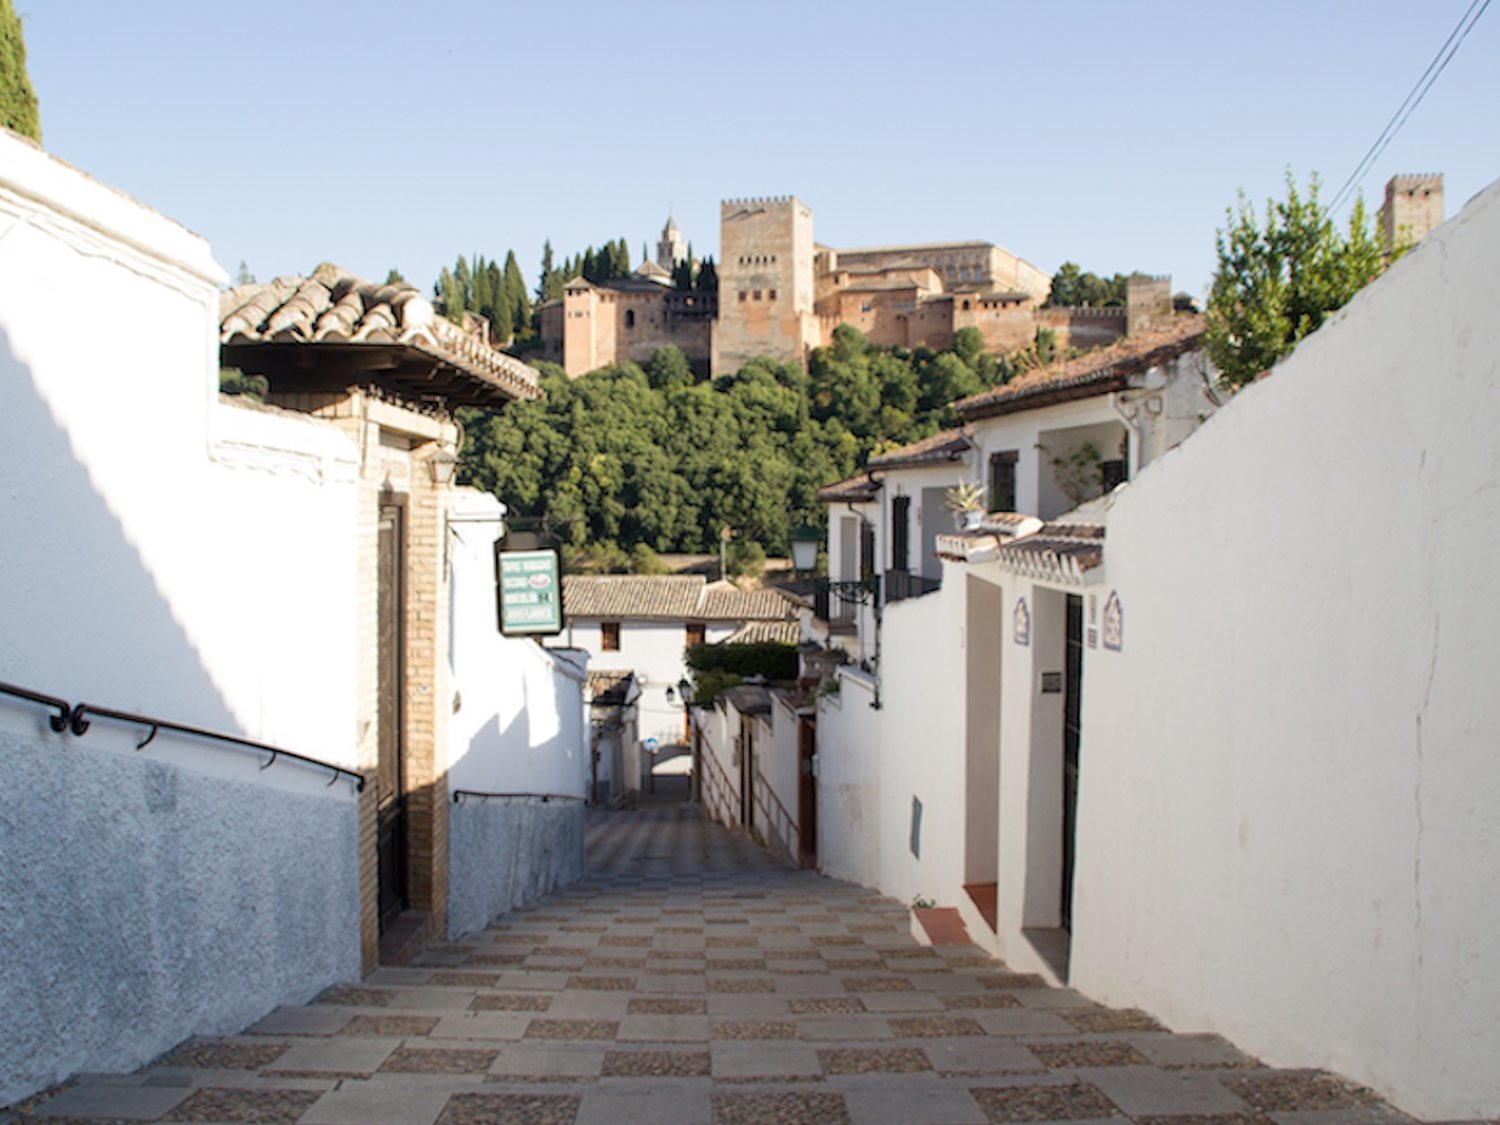 Las 12 calles más bonitas de España que no te puedes perder